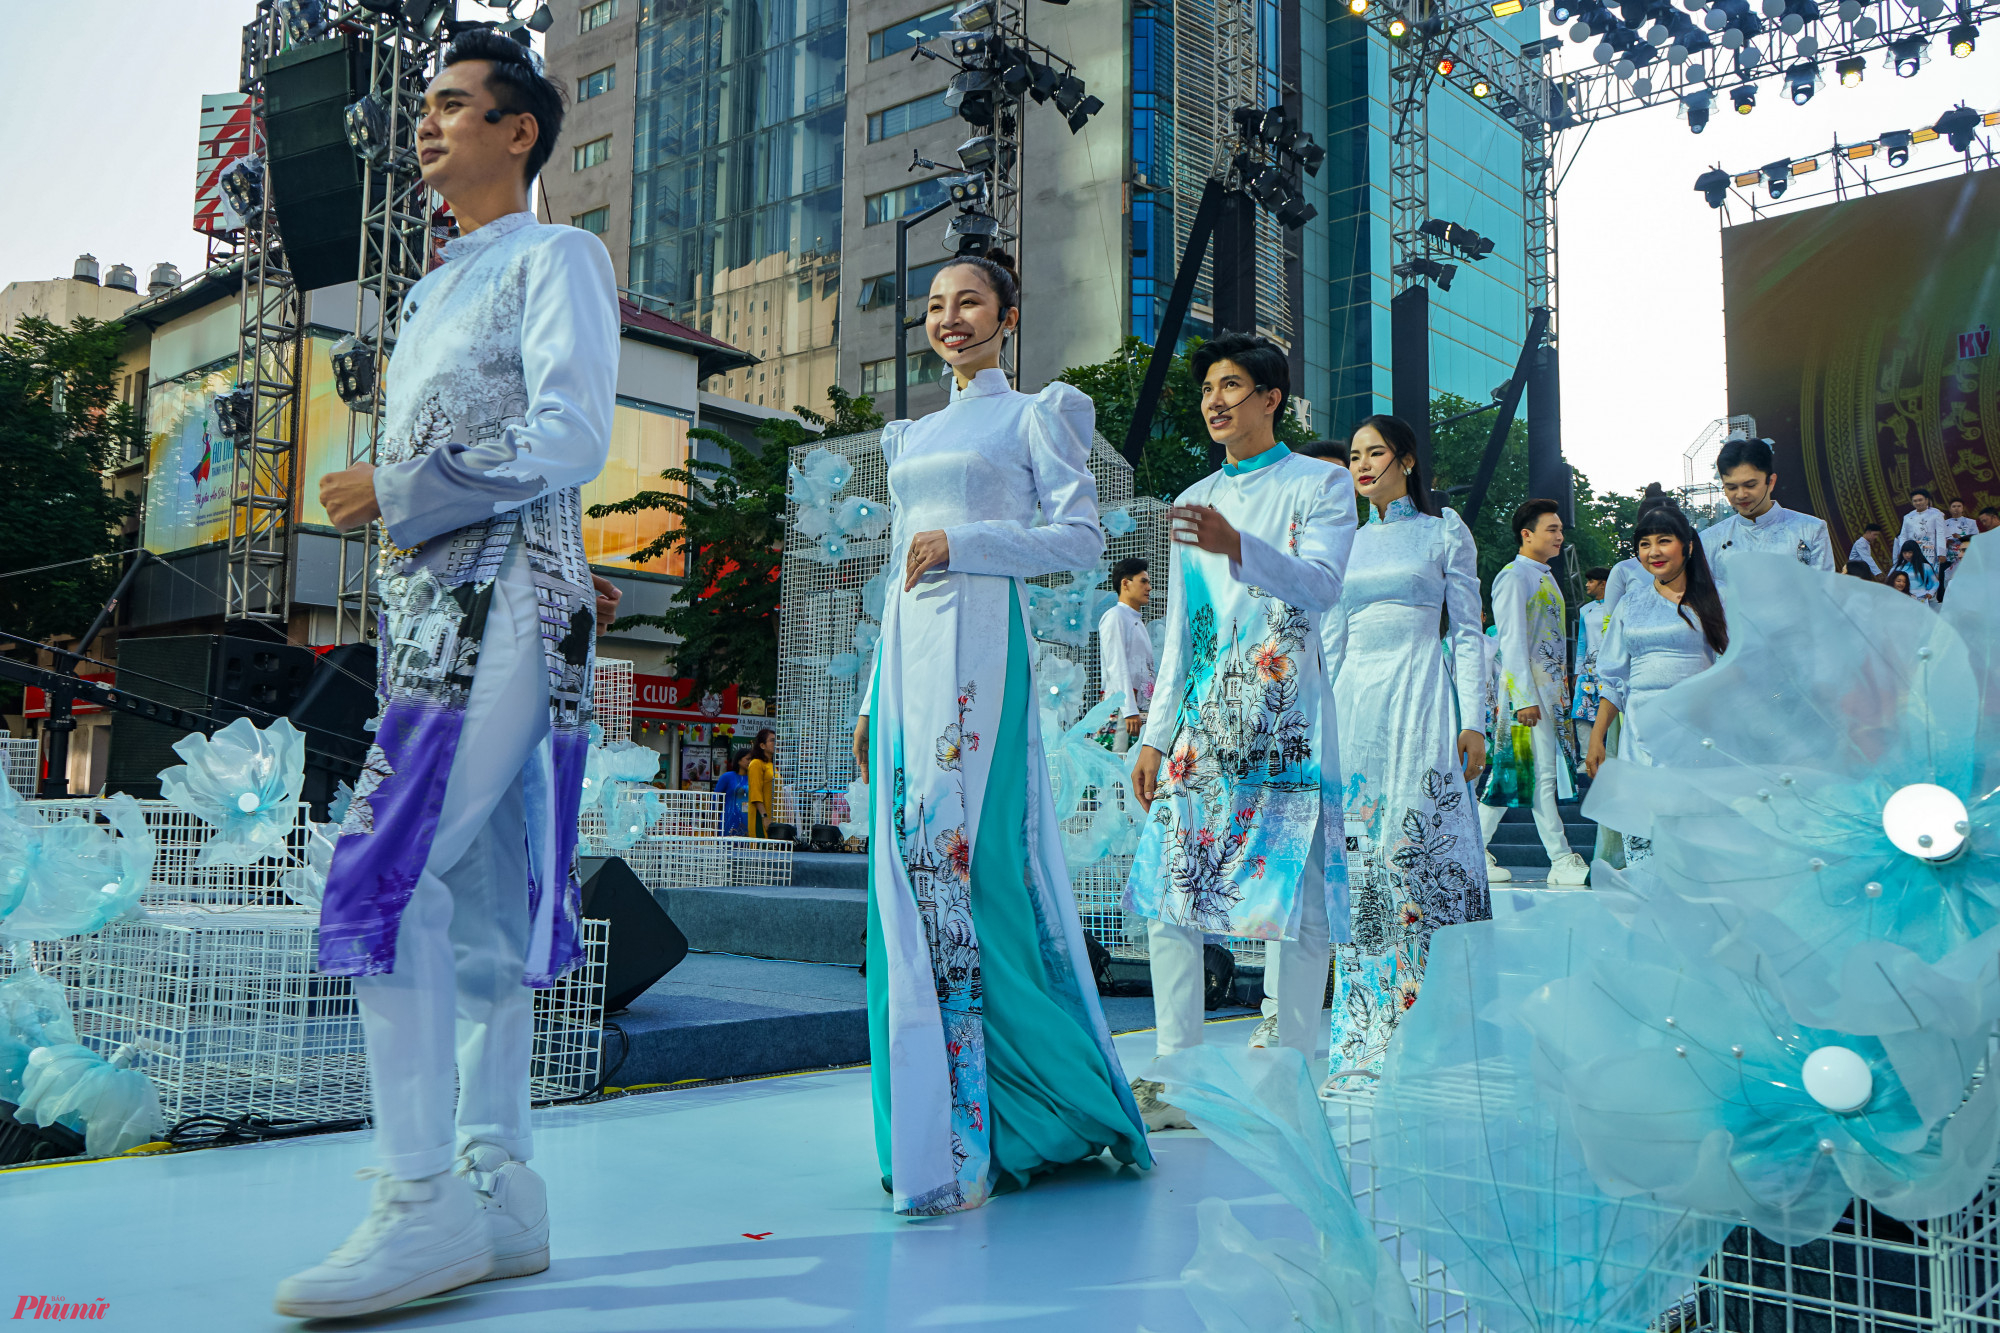  Đây là hoạt động văn hóa nằm trong khuôn khổ các sự kiện của Lễ hội Áo dài TPHCM lần thứ 9 nhằm quảng bá hình ảnh du lịch thành phố cùng áo dài Việt Nam đến công chúng.